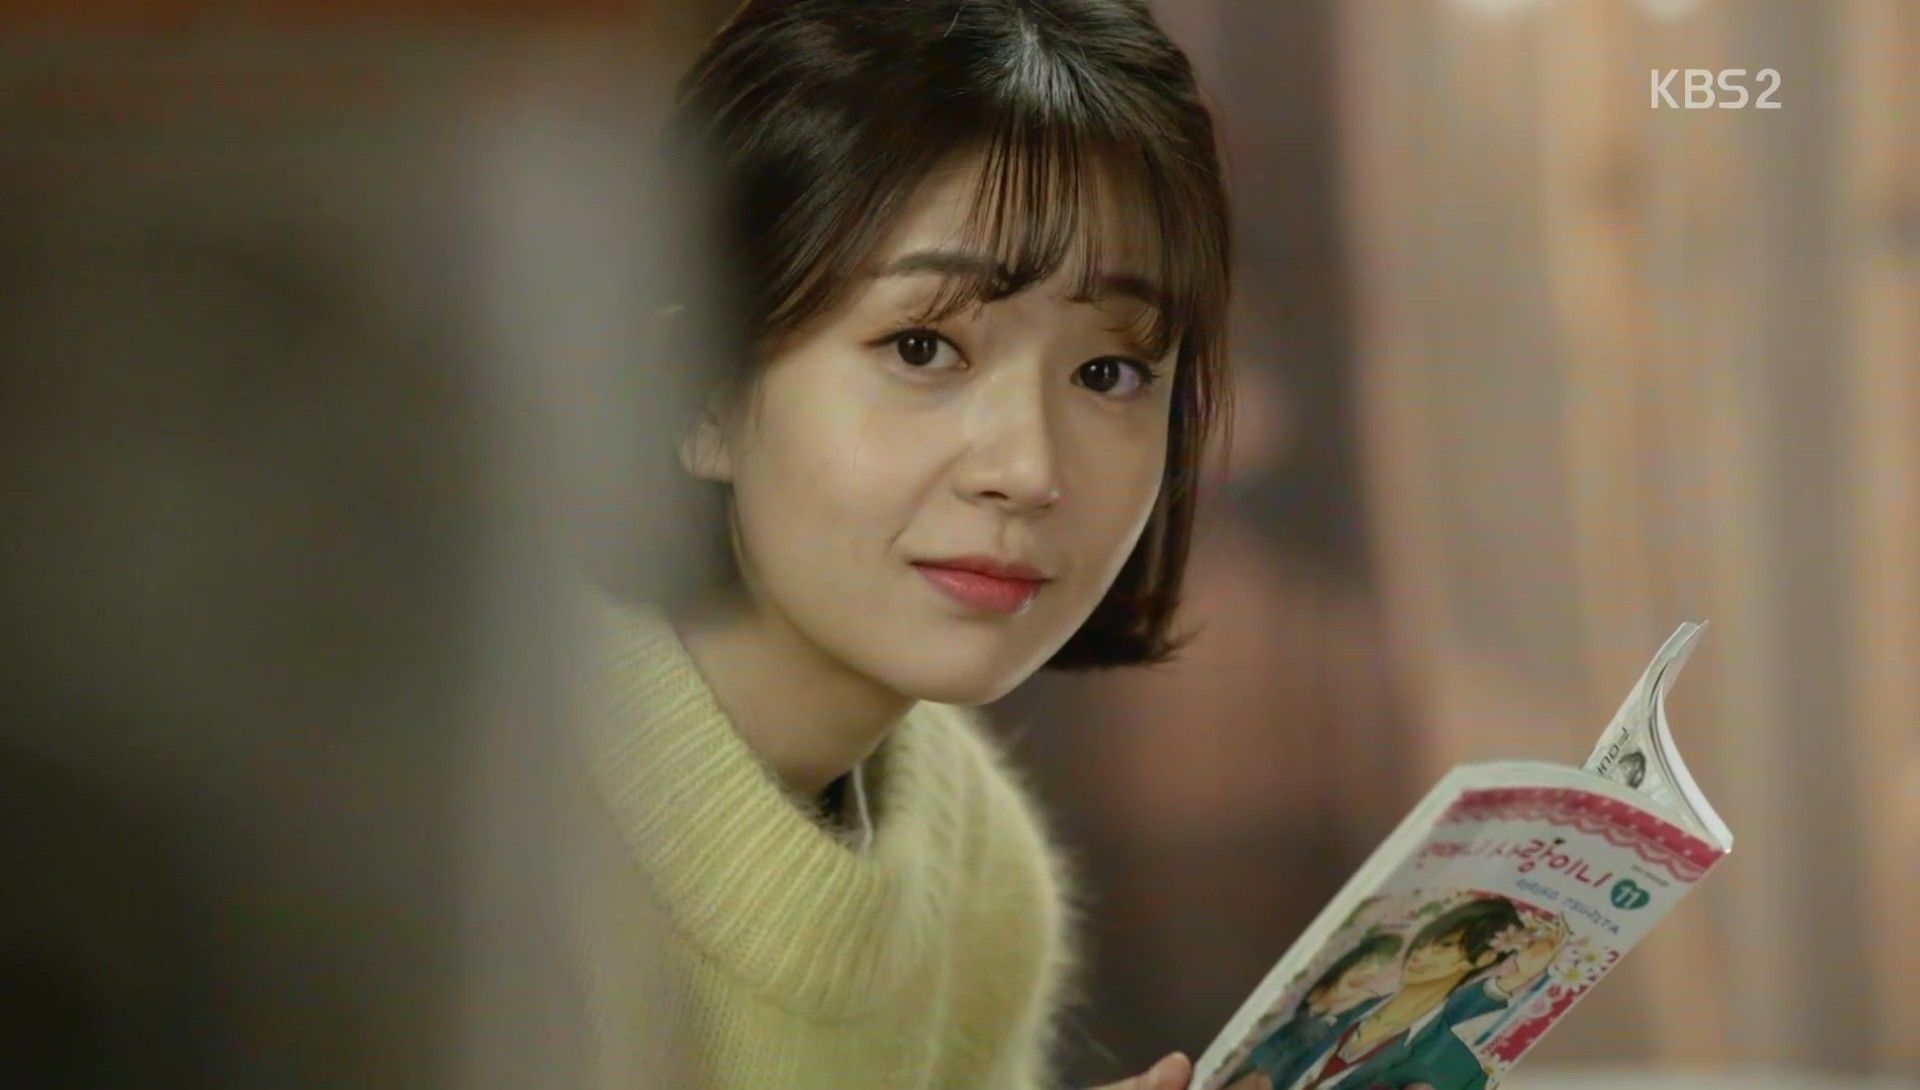 Ini nih wajah polos nan lucu dari aktris Baek Jin Hee Bikin gemas maksimal deh